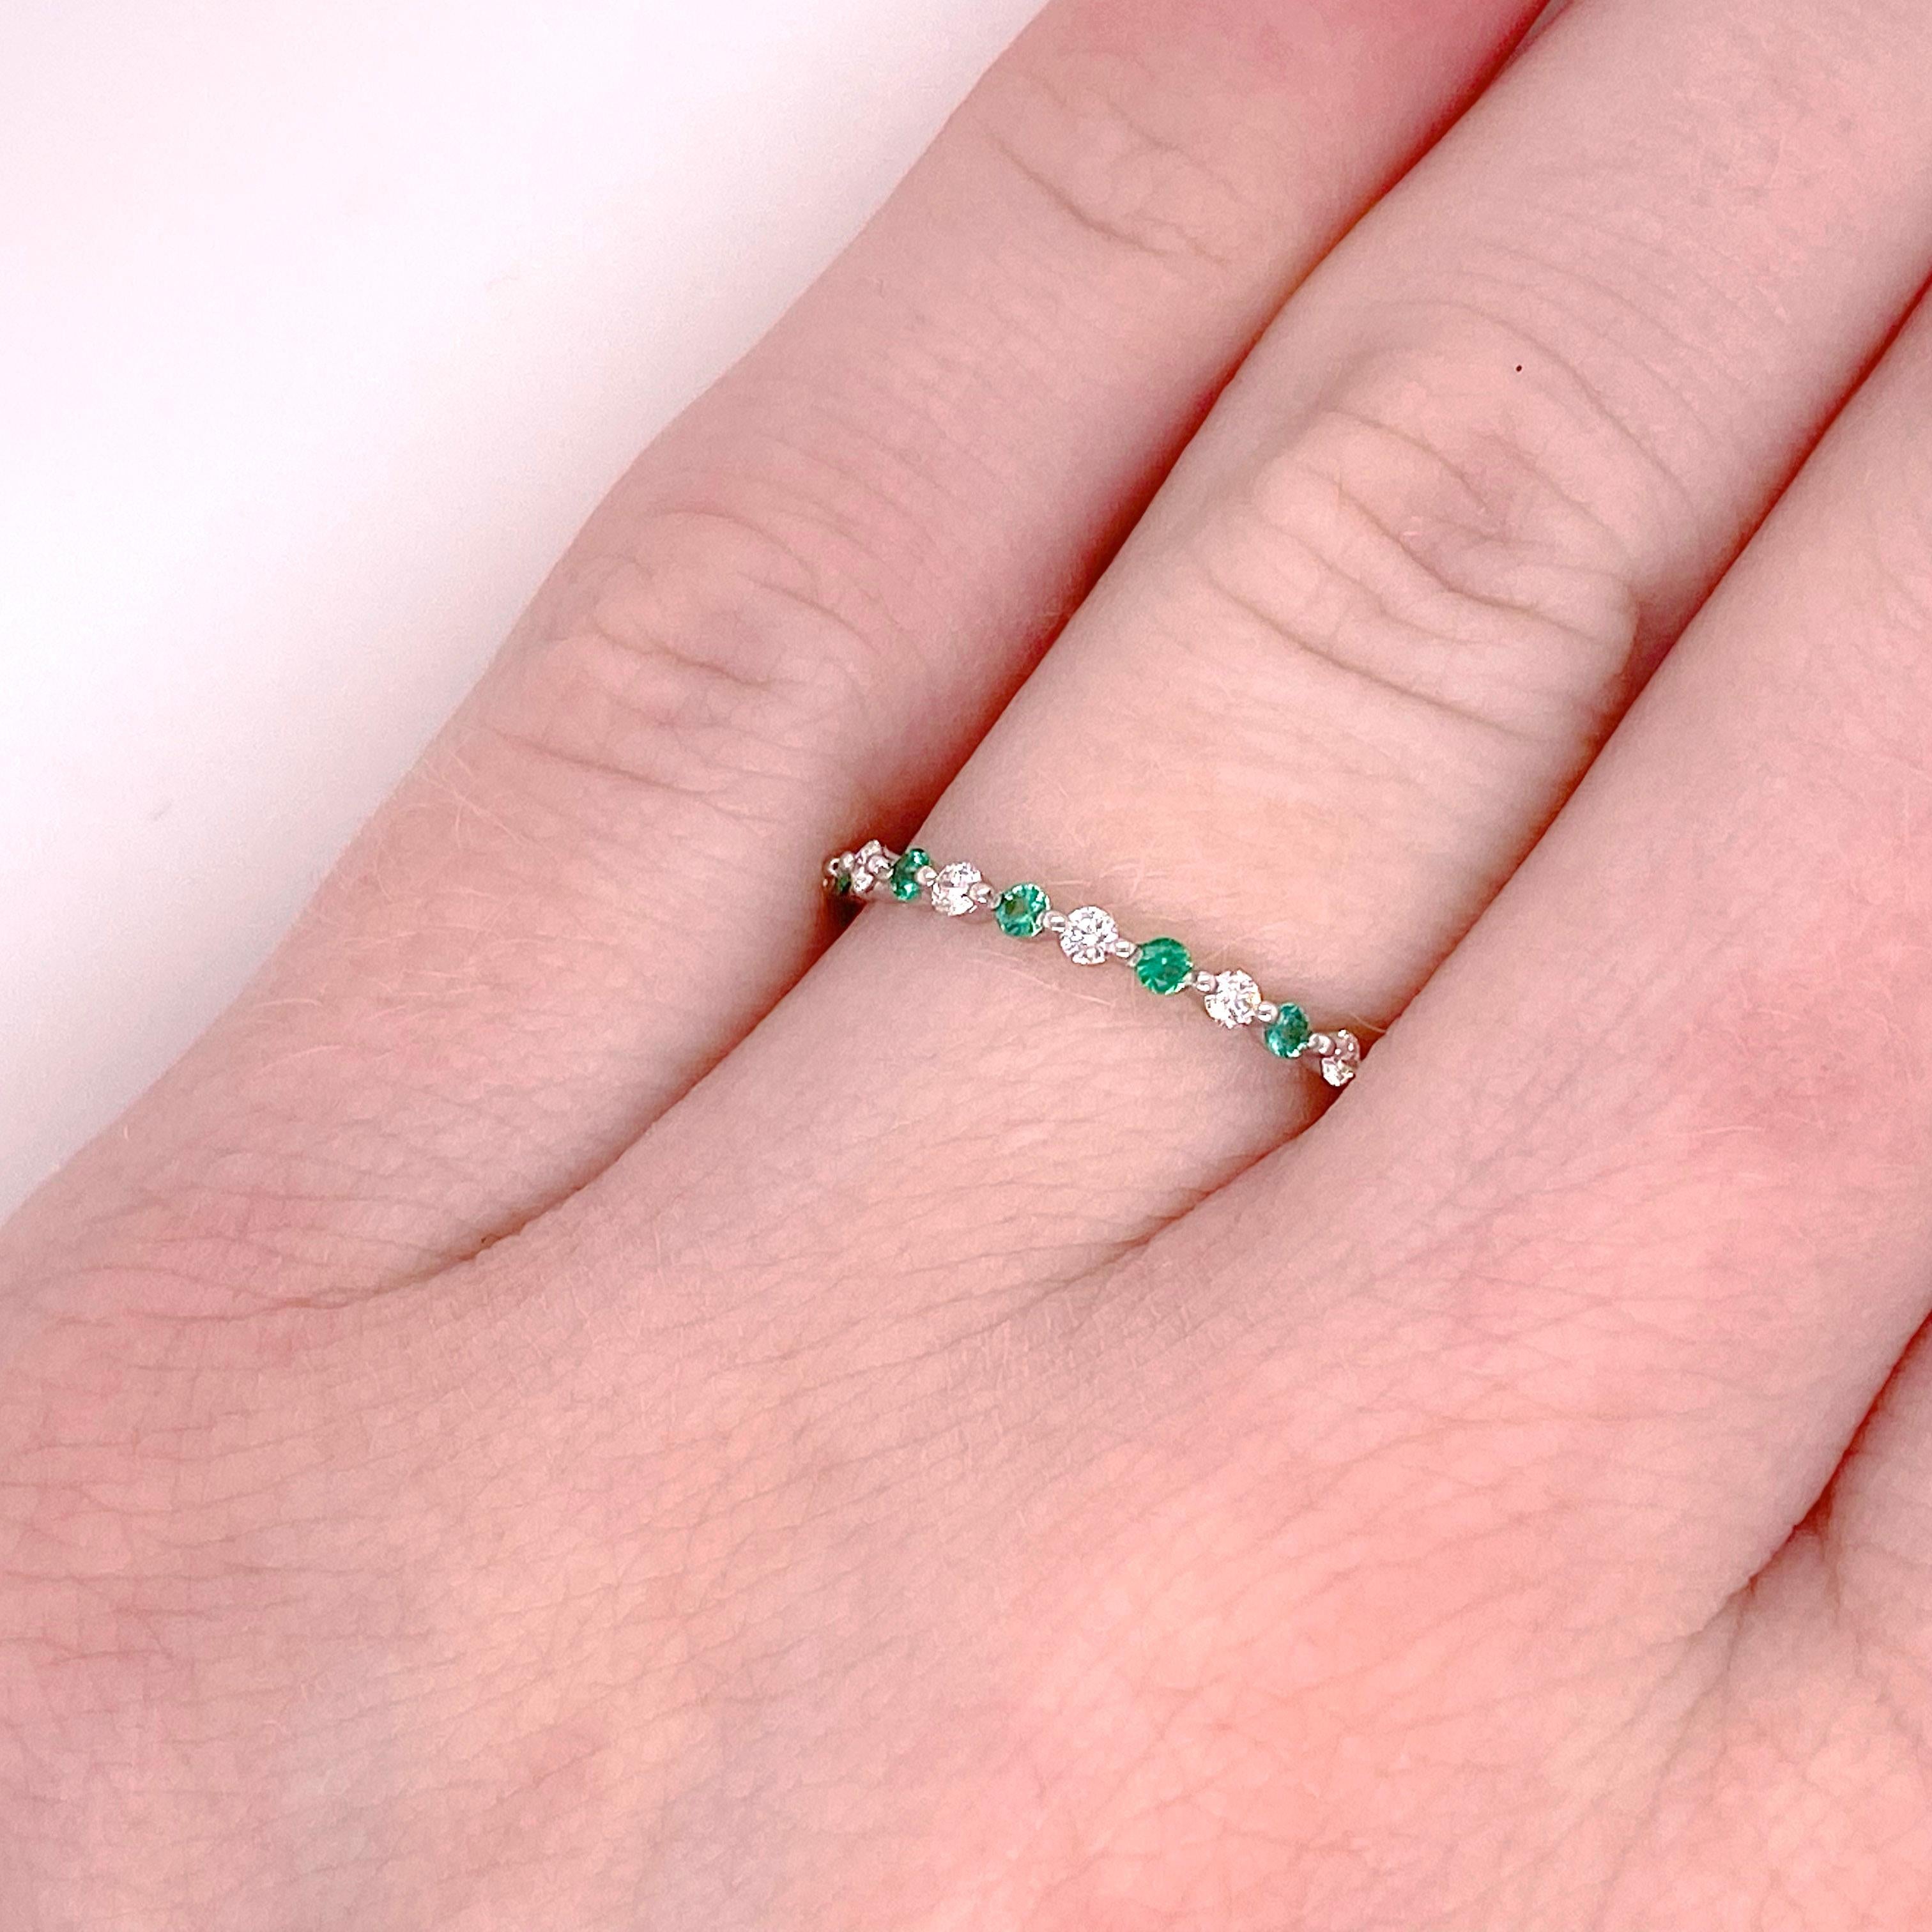 Dieser Smaragd- und Diamantring ist in wunderschönes 14-karätiges Weißgold gefasst. Der Ring hat ein Gesamtgewicht von 0,34 Karat. Insgesamt 14 Diamanten und Smaragde bilden ein wunderschönes Design. Es kann allein oder mit anderen stapelbaren